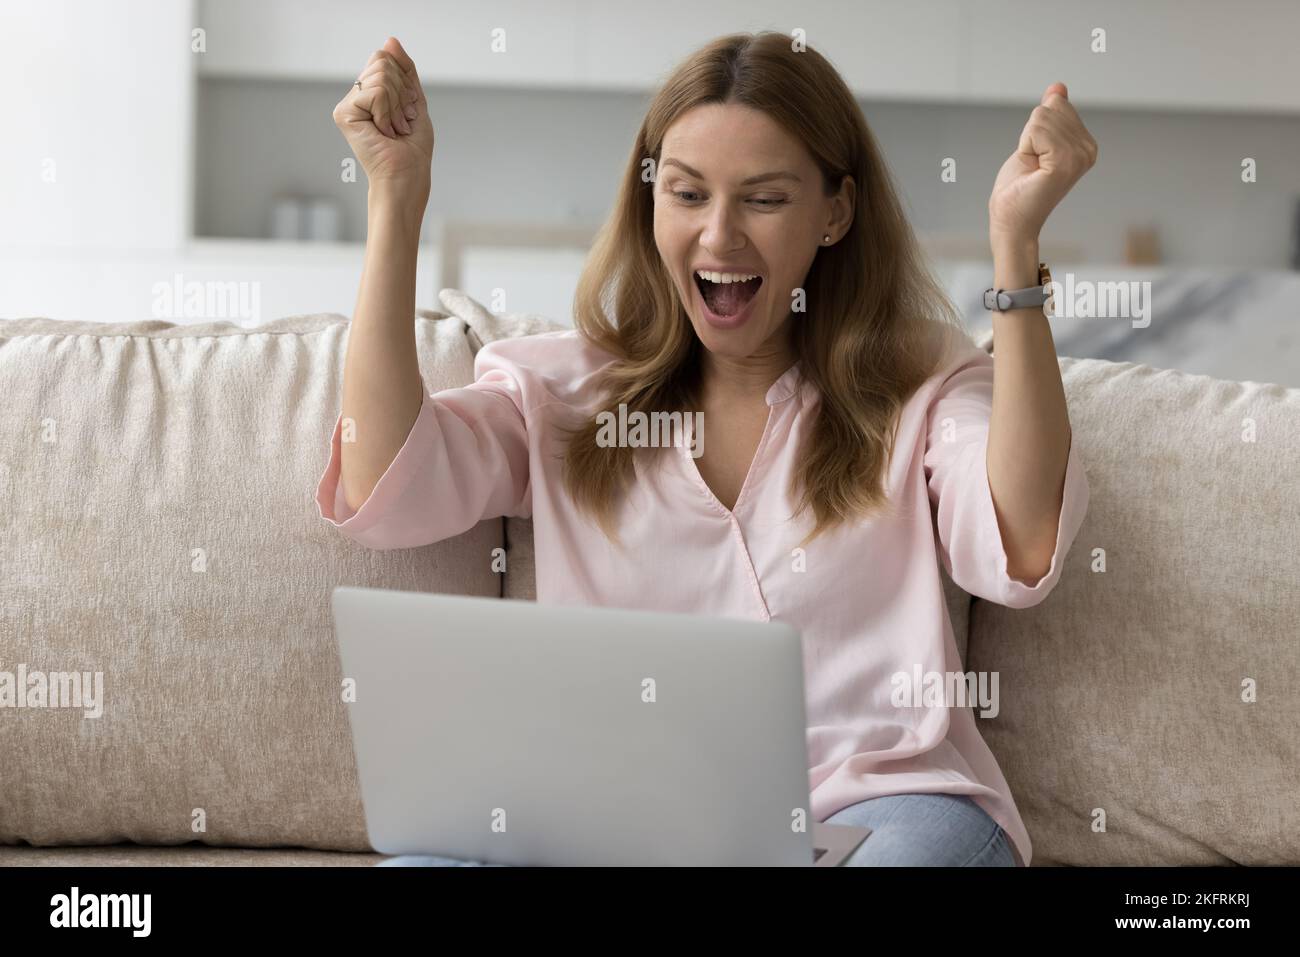 Mujer mira el portátil, grita con alegría celebrar las grandes noticias Foto de stock